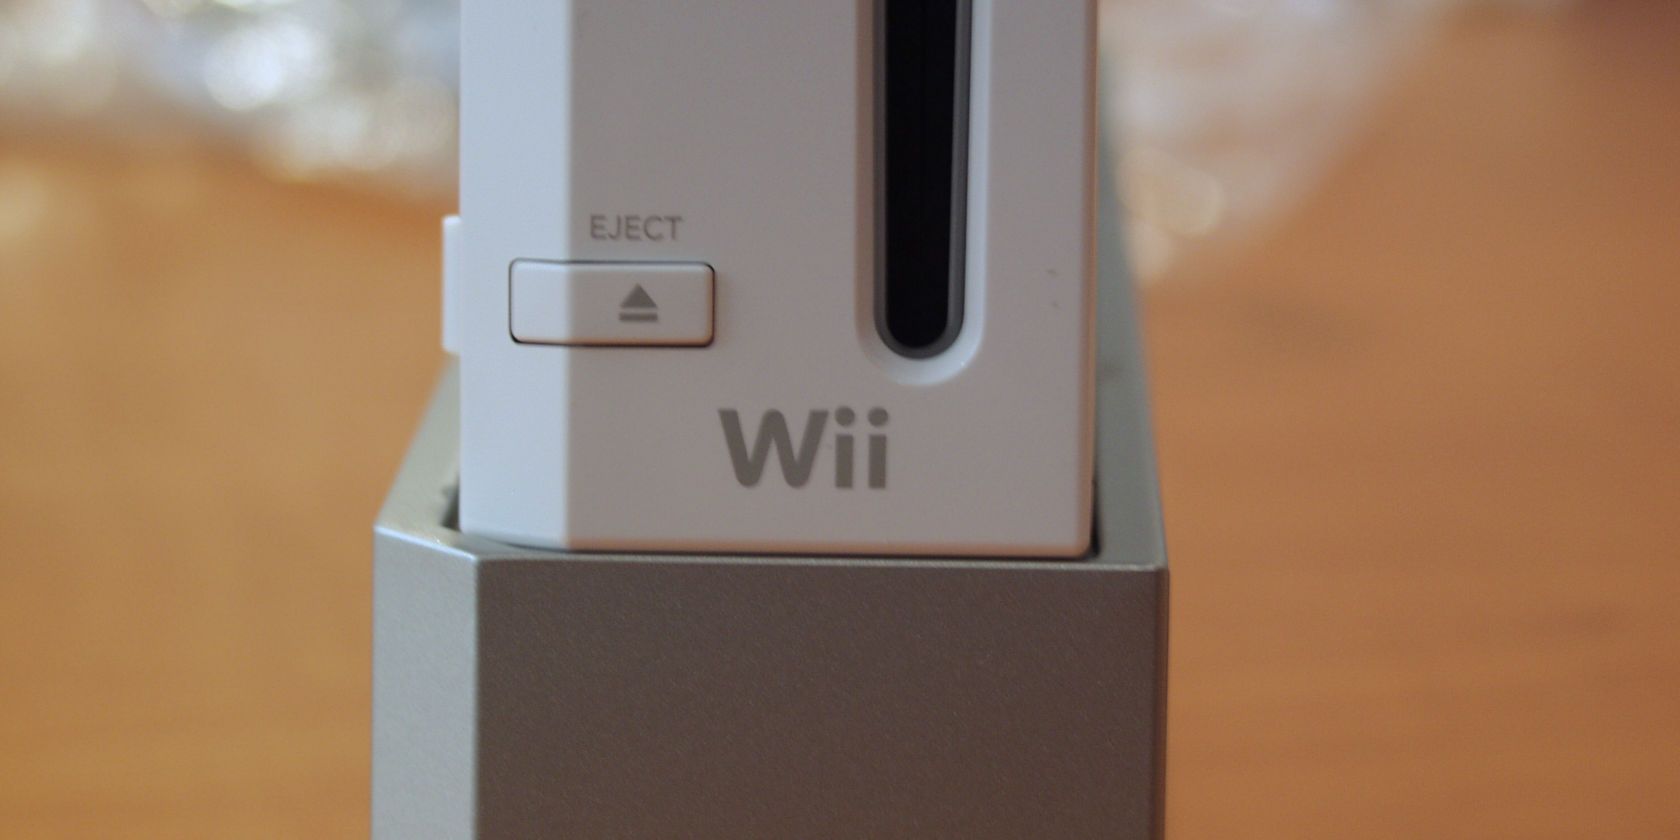 Wii no es connecta a WiFi? Aquí teniu una solució fàcil